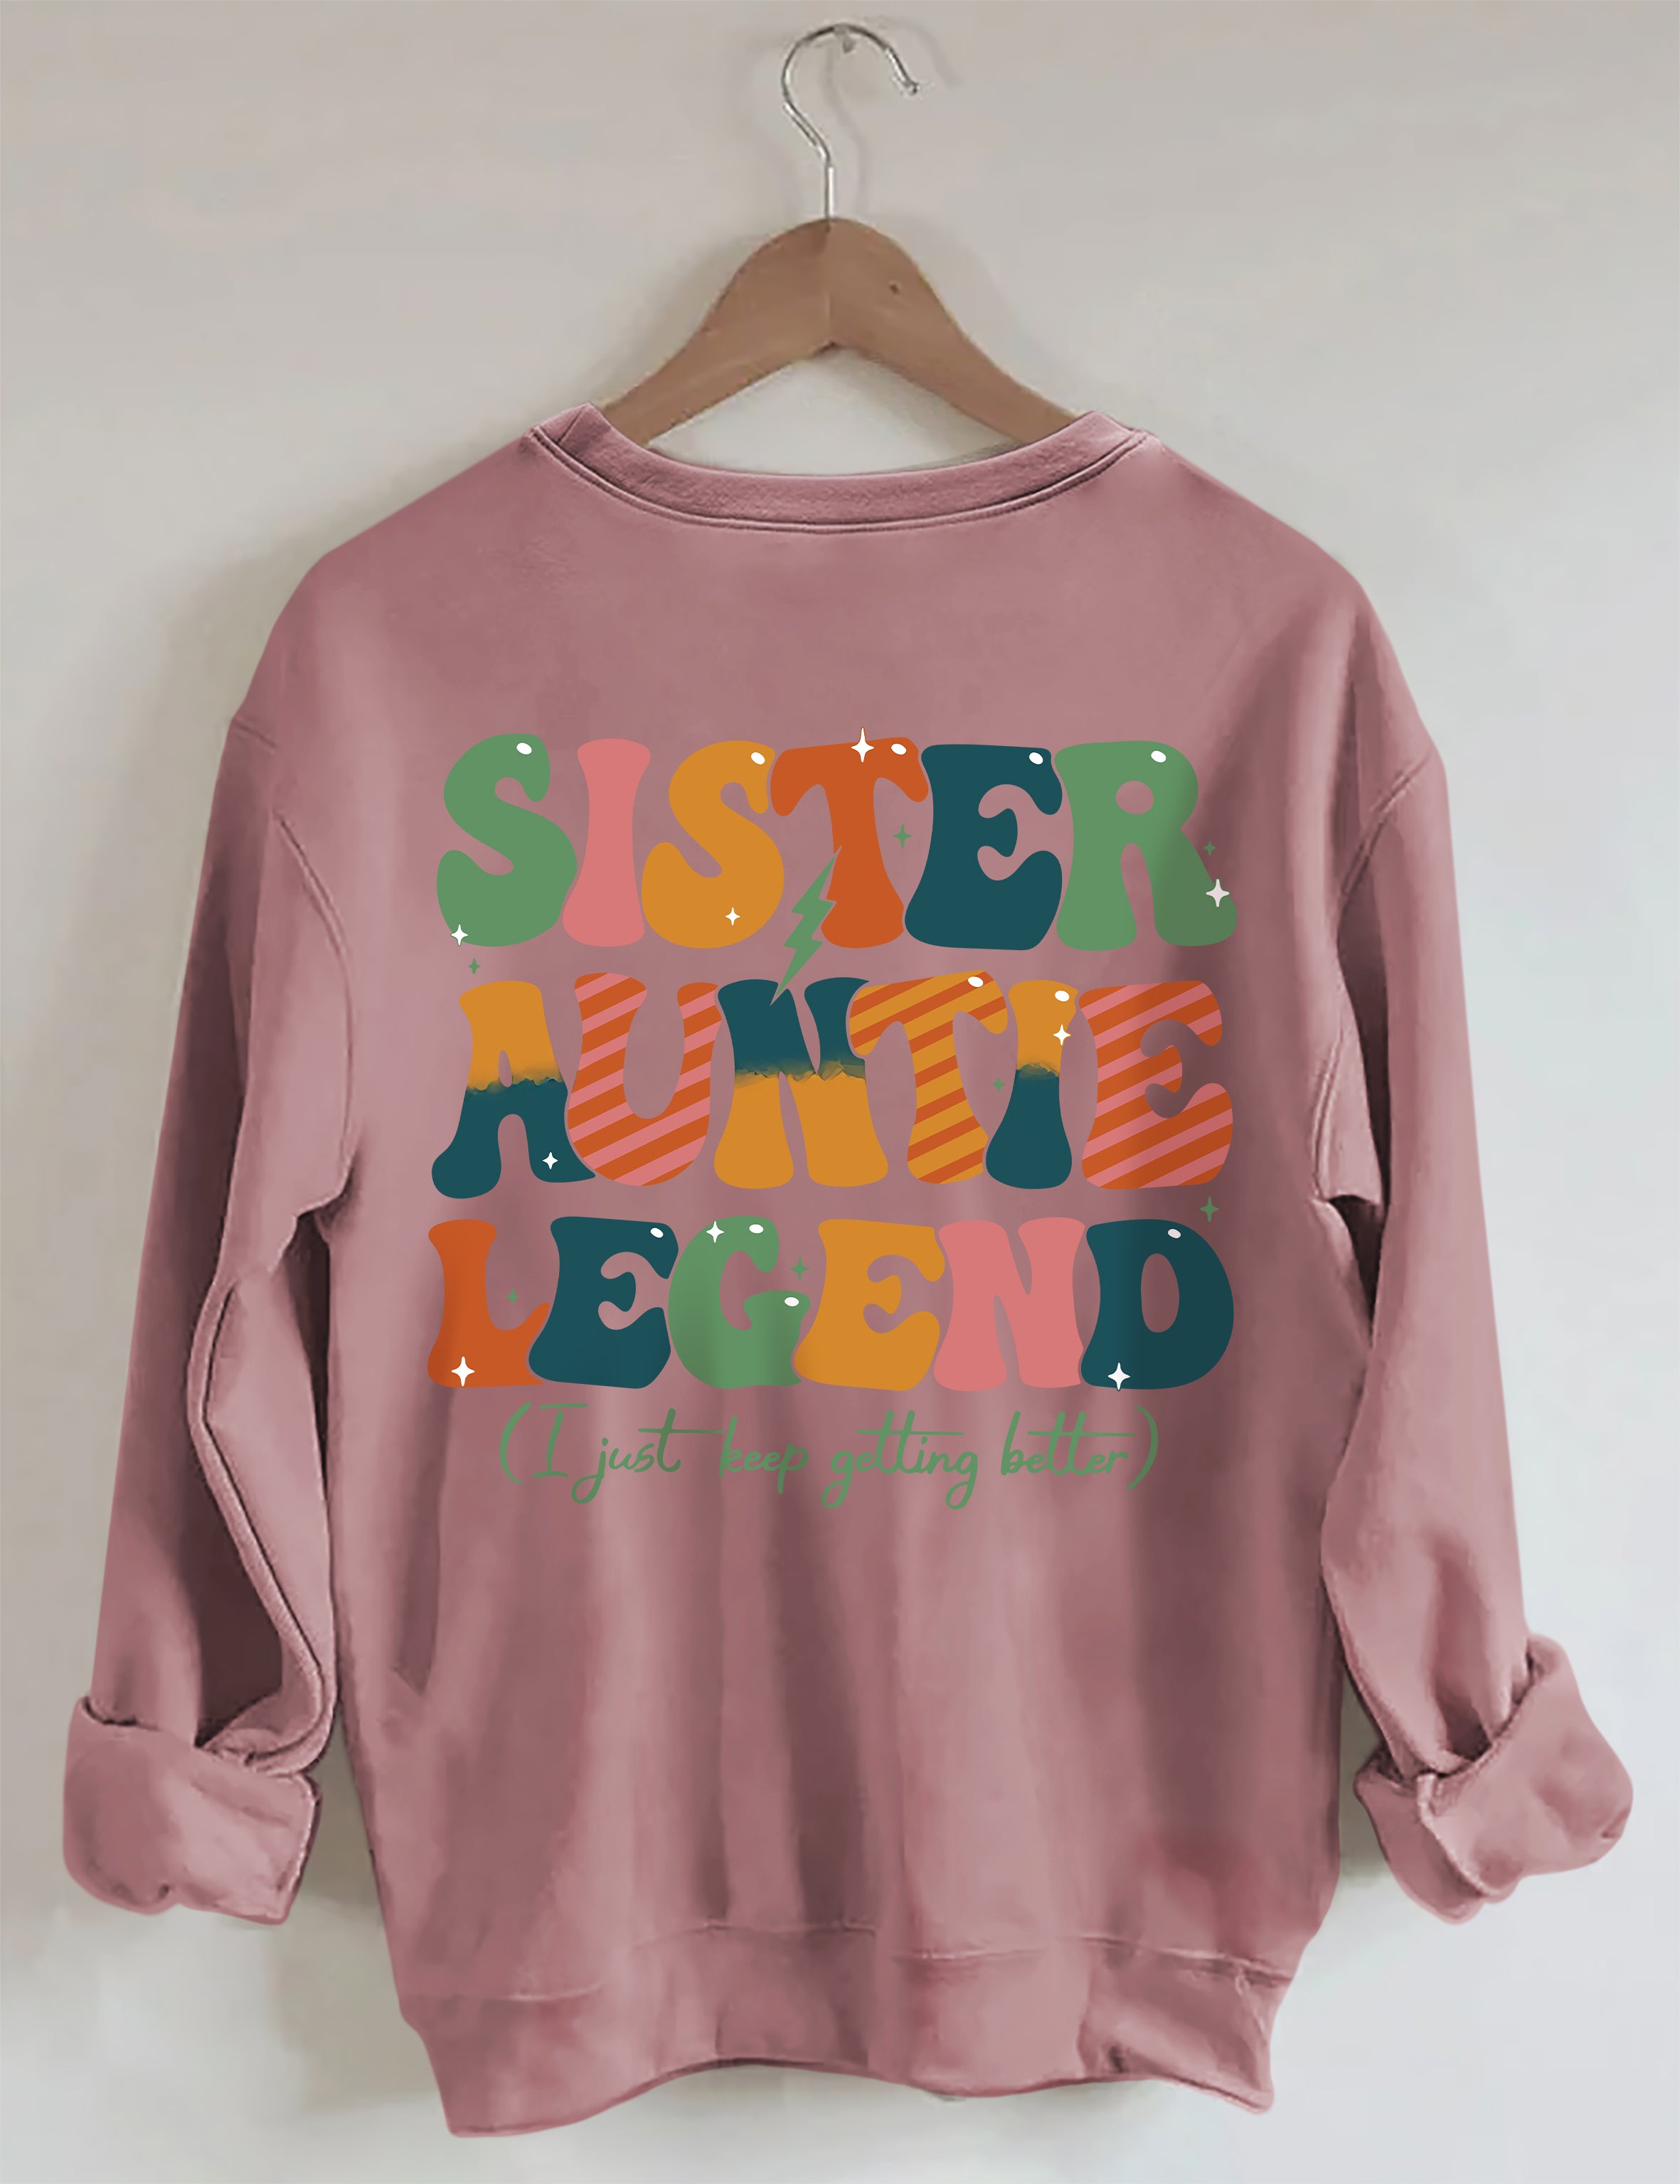 Sister Auntie Legend Sweatshirt